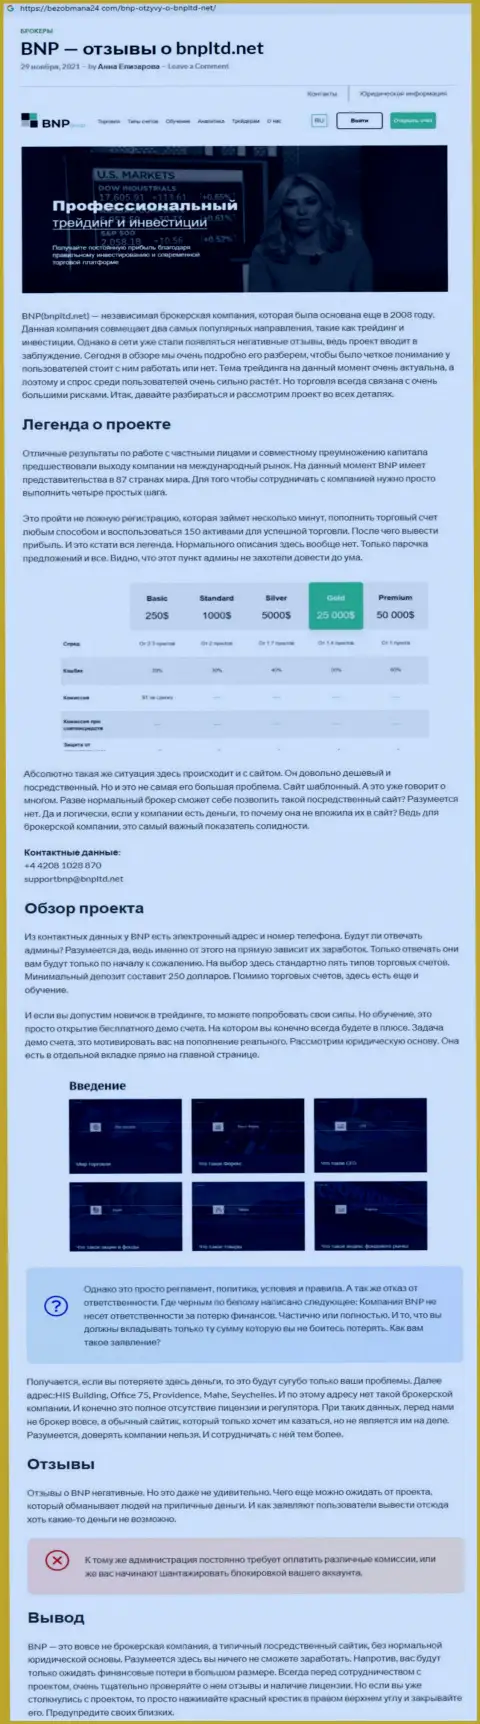 О вложенных в контору BNPLtd Net средствах можете забыть, воруют все до последнего рубля (обзор)